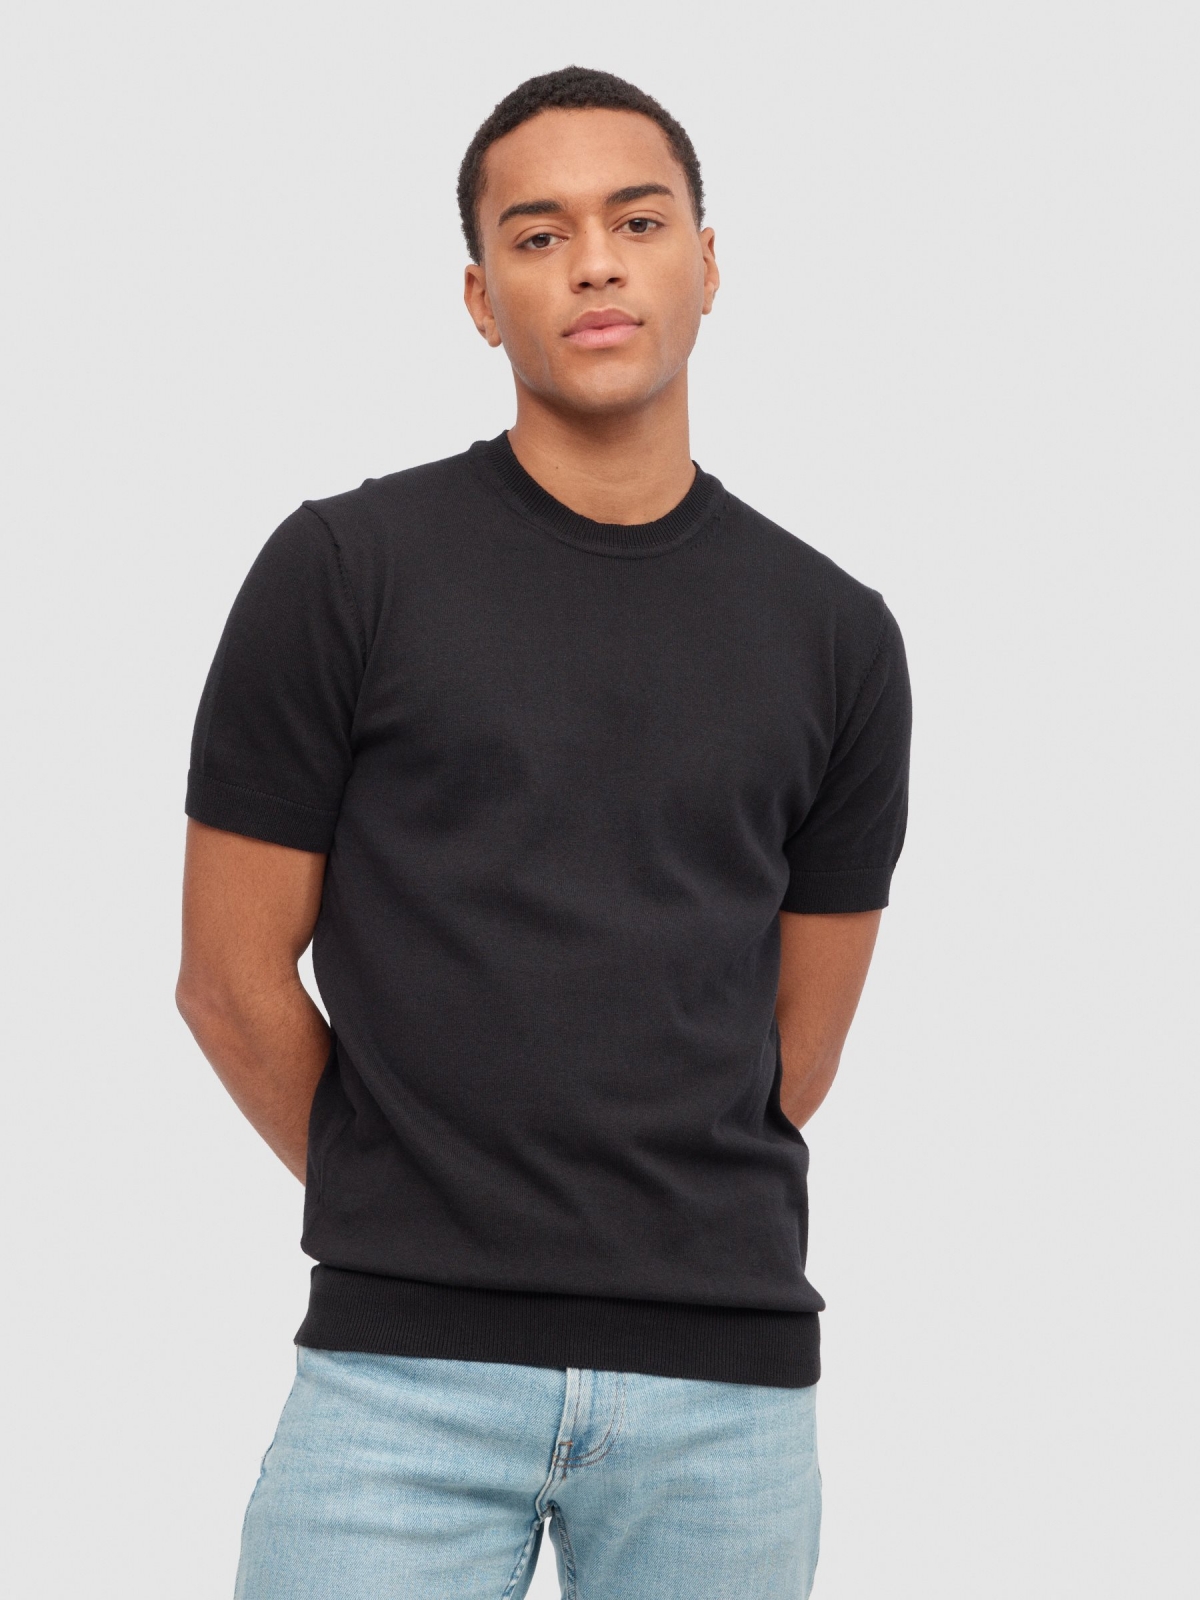 T-shirt tricotada básica preto vista meia frontal